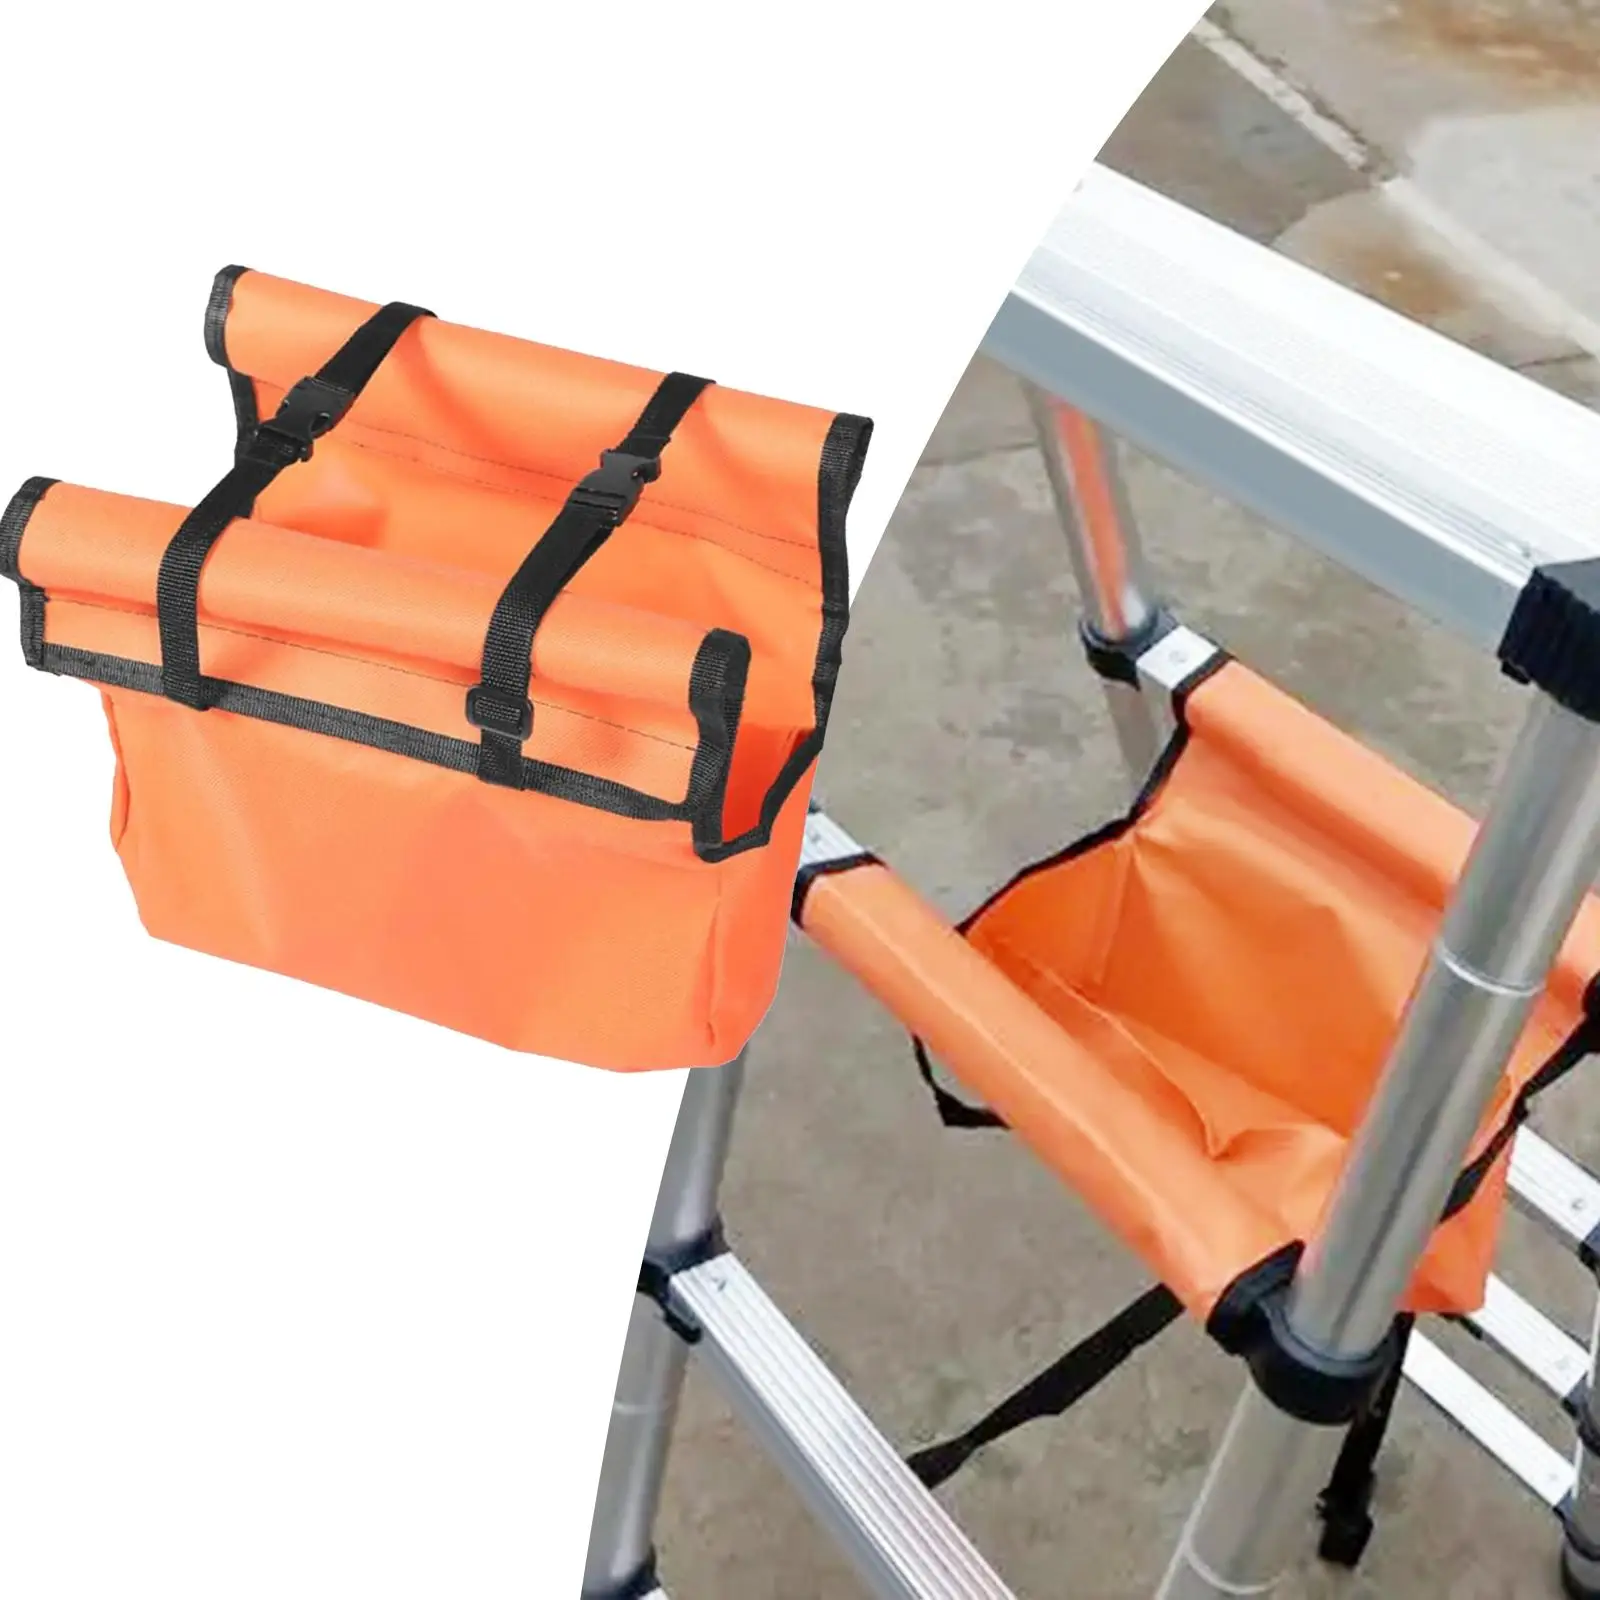 Foldable Extension Ladder Tool Hanging Bag 11.8inch Long Orange for Workshop